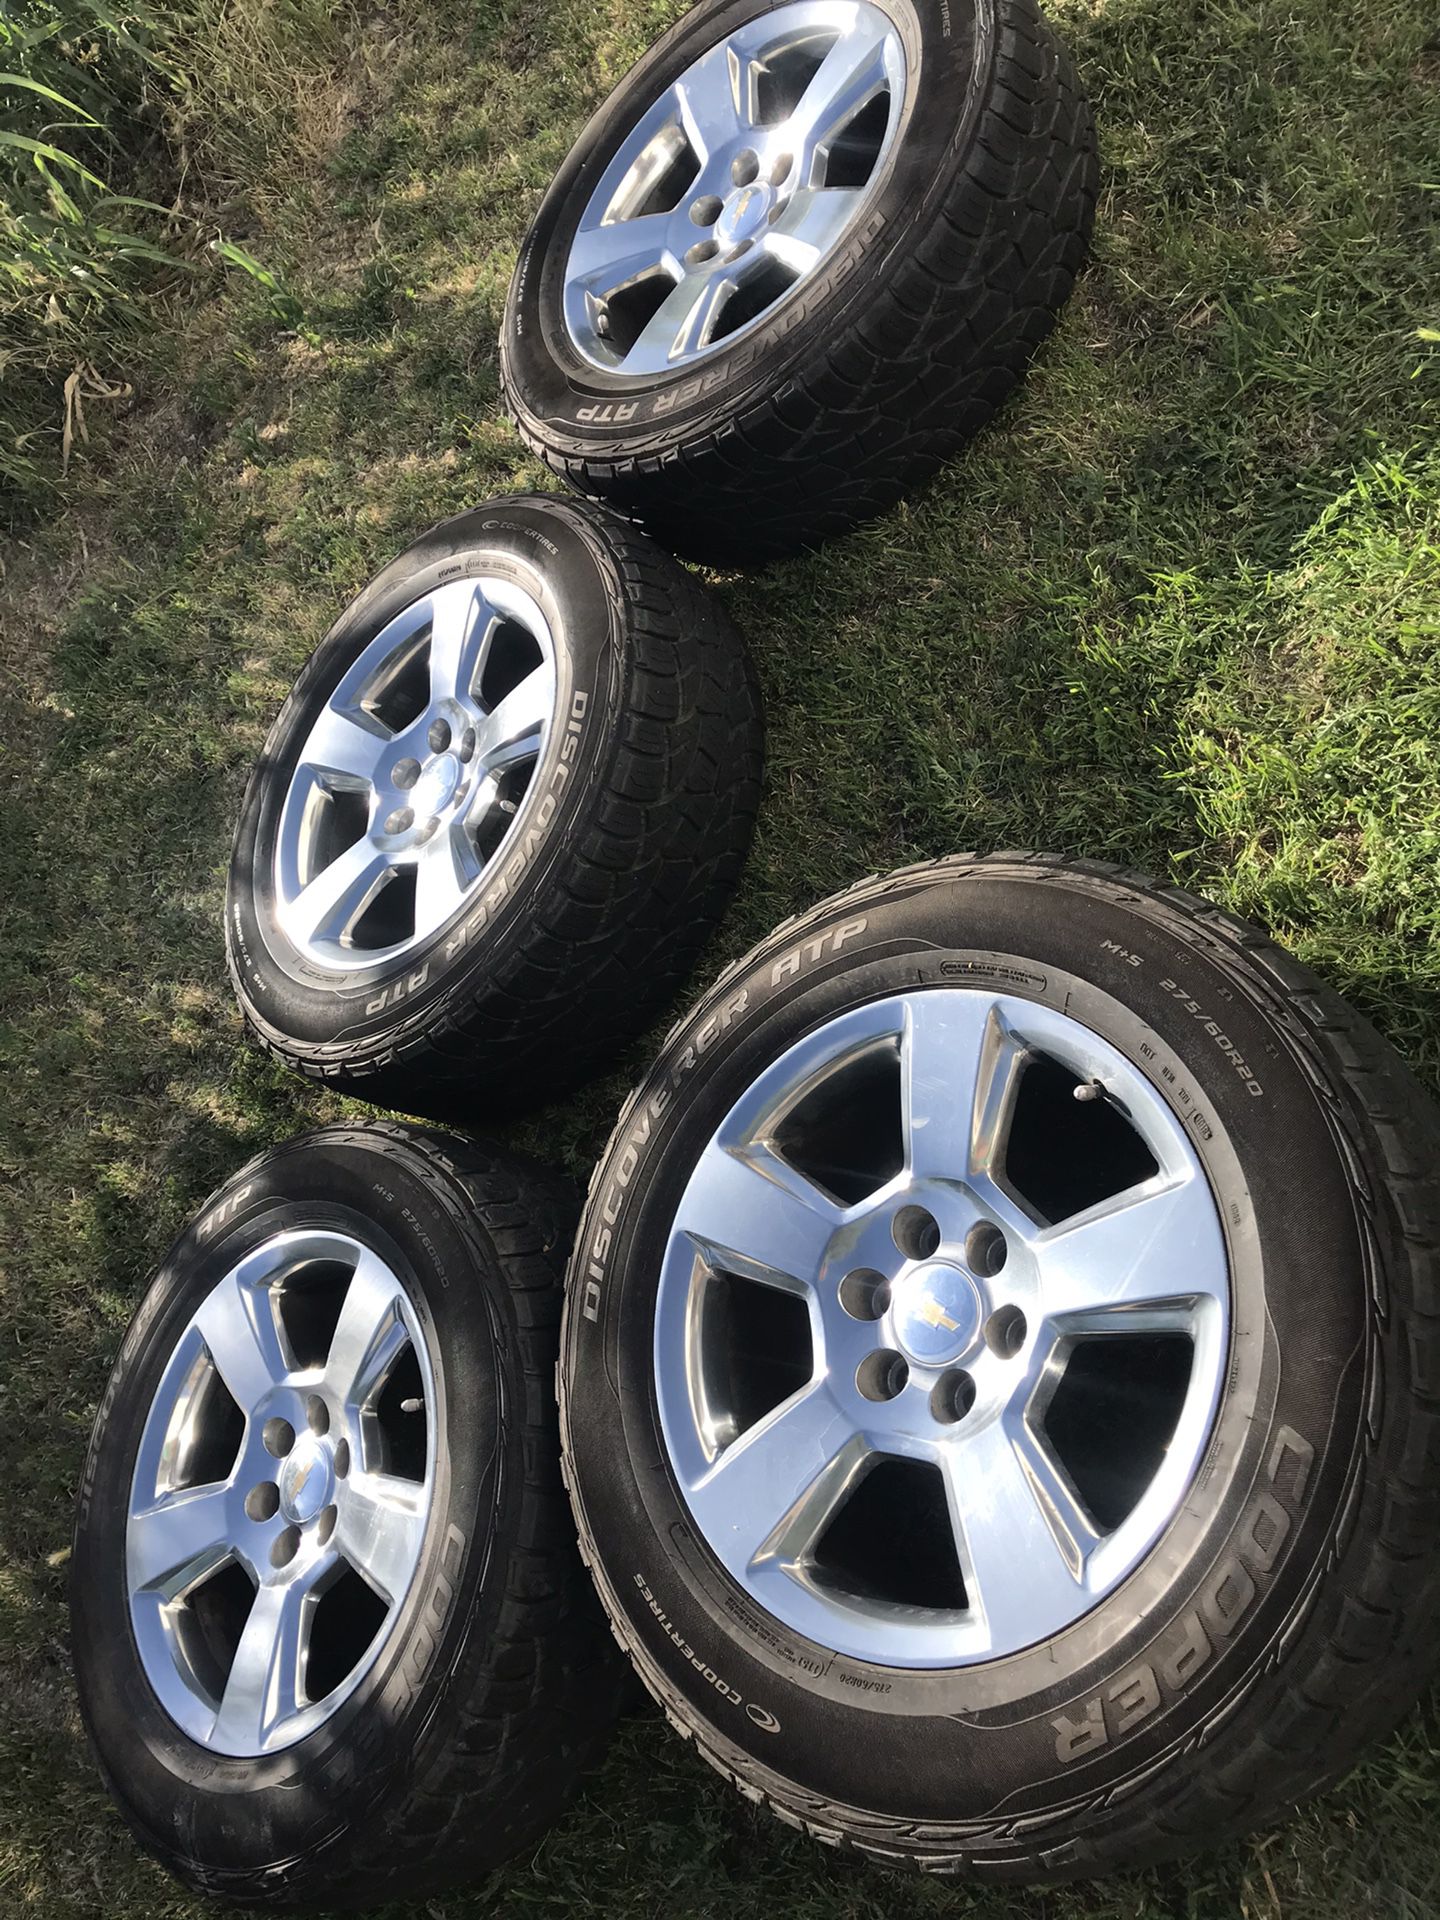 GM Silverado rims with tires